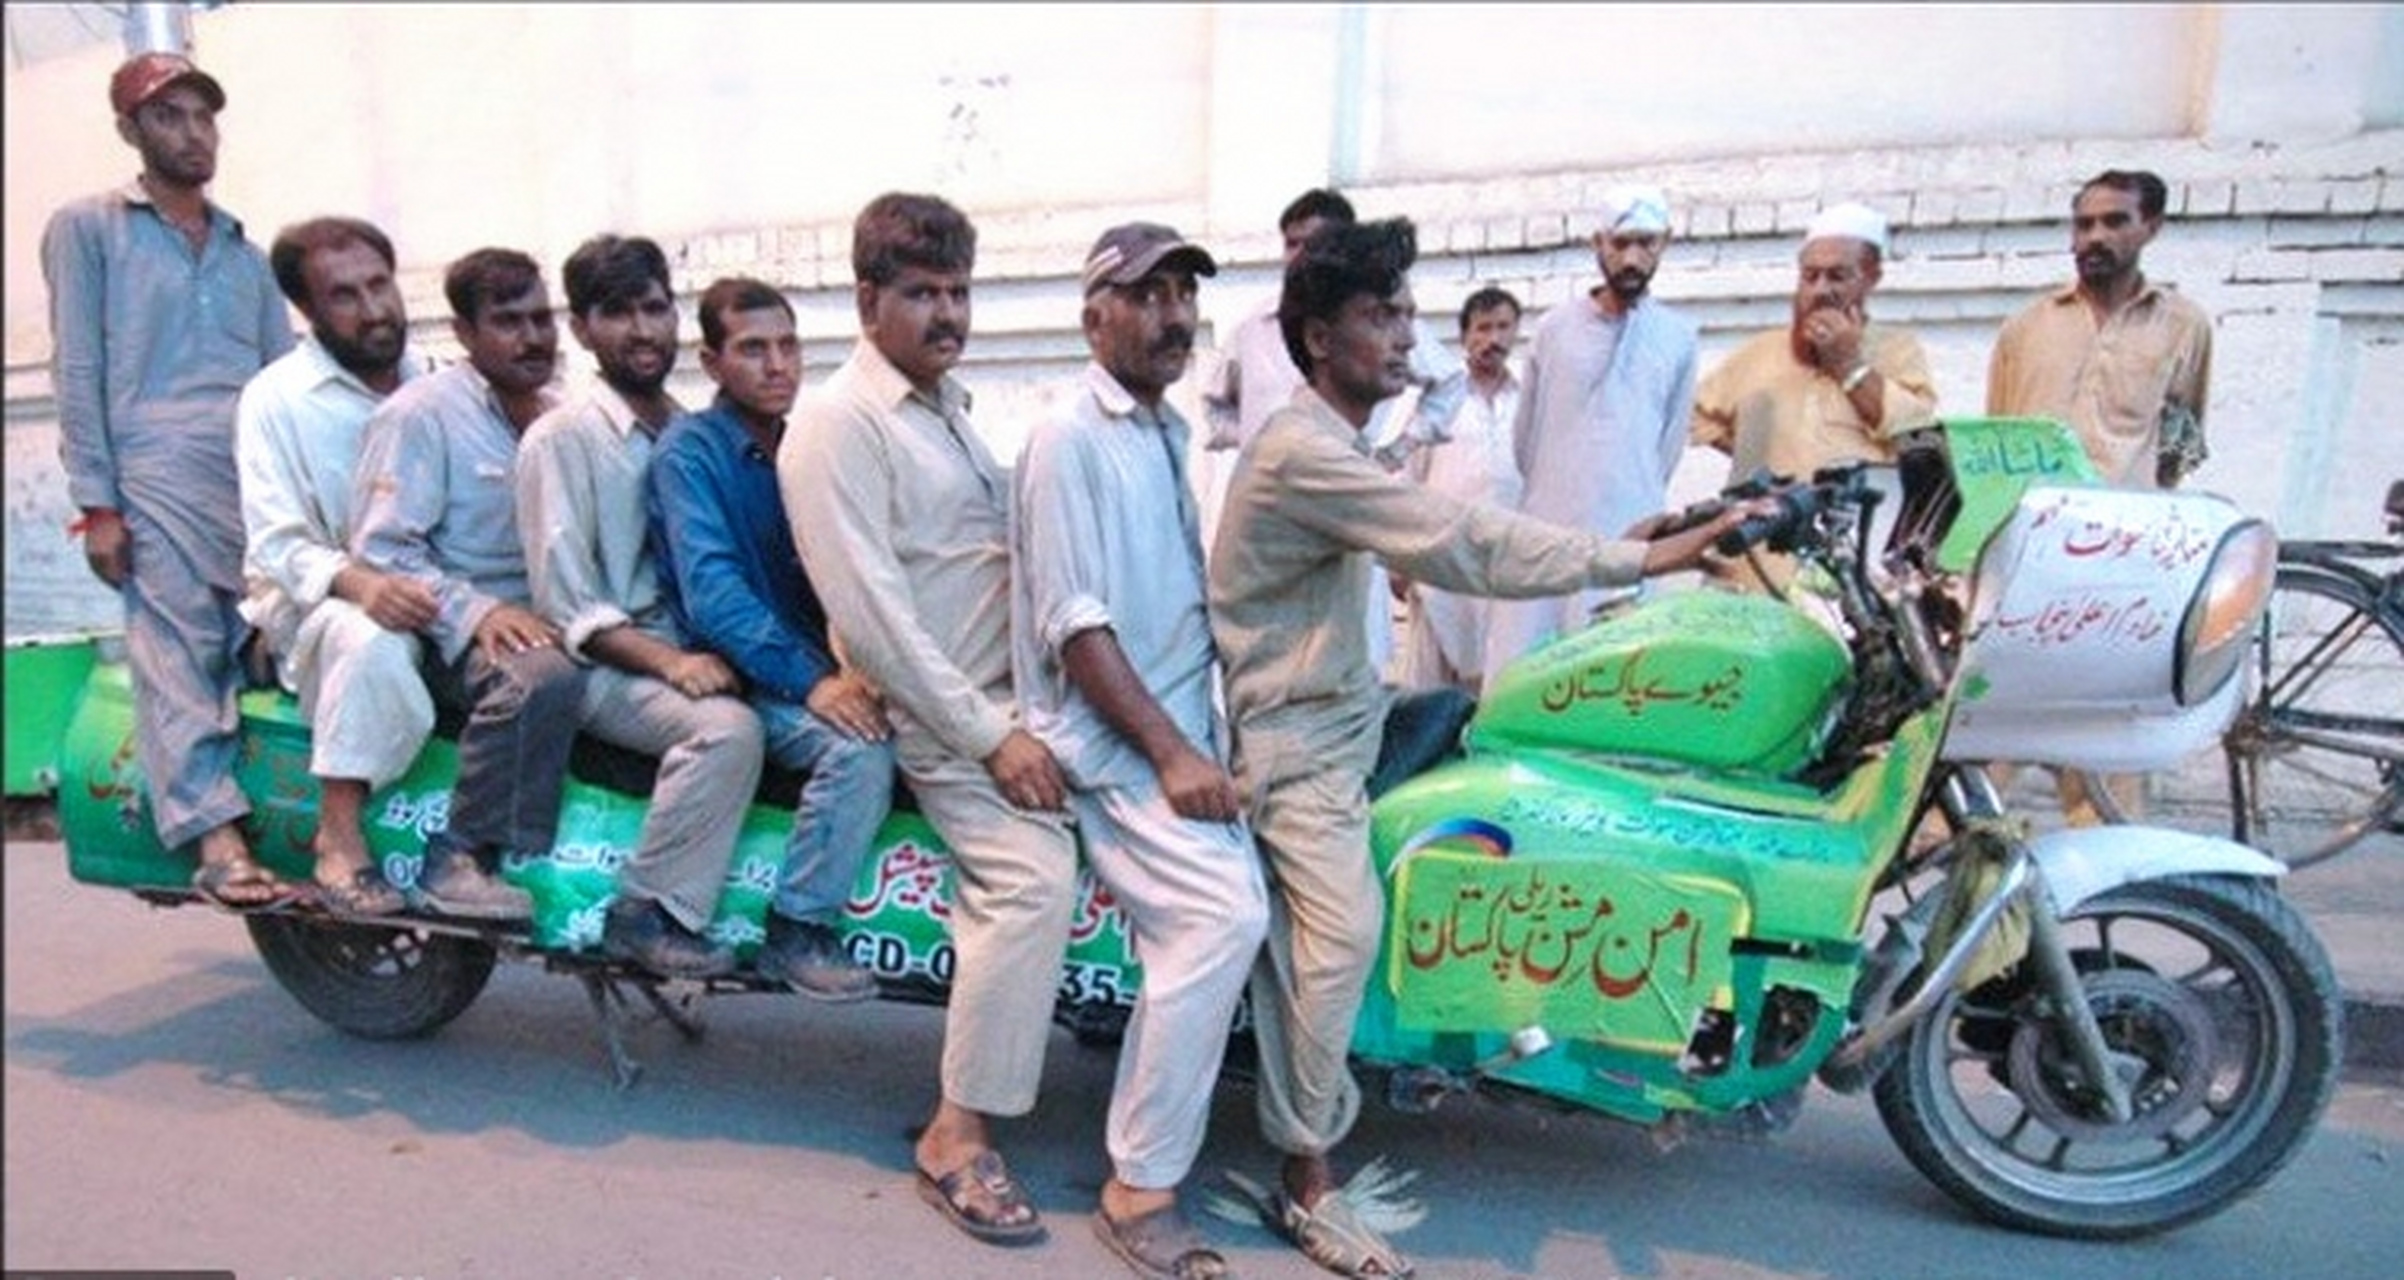 印度摩托车超载54人图图片